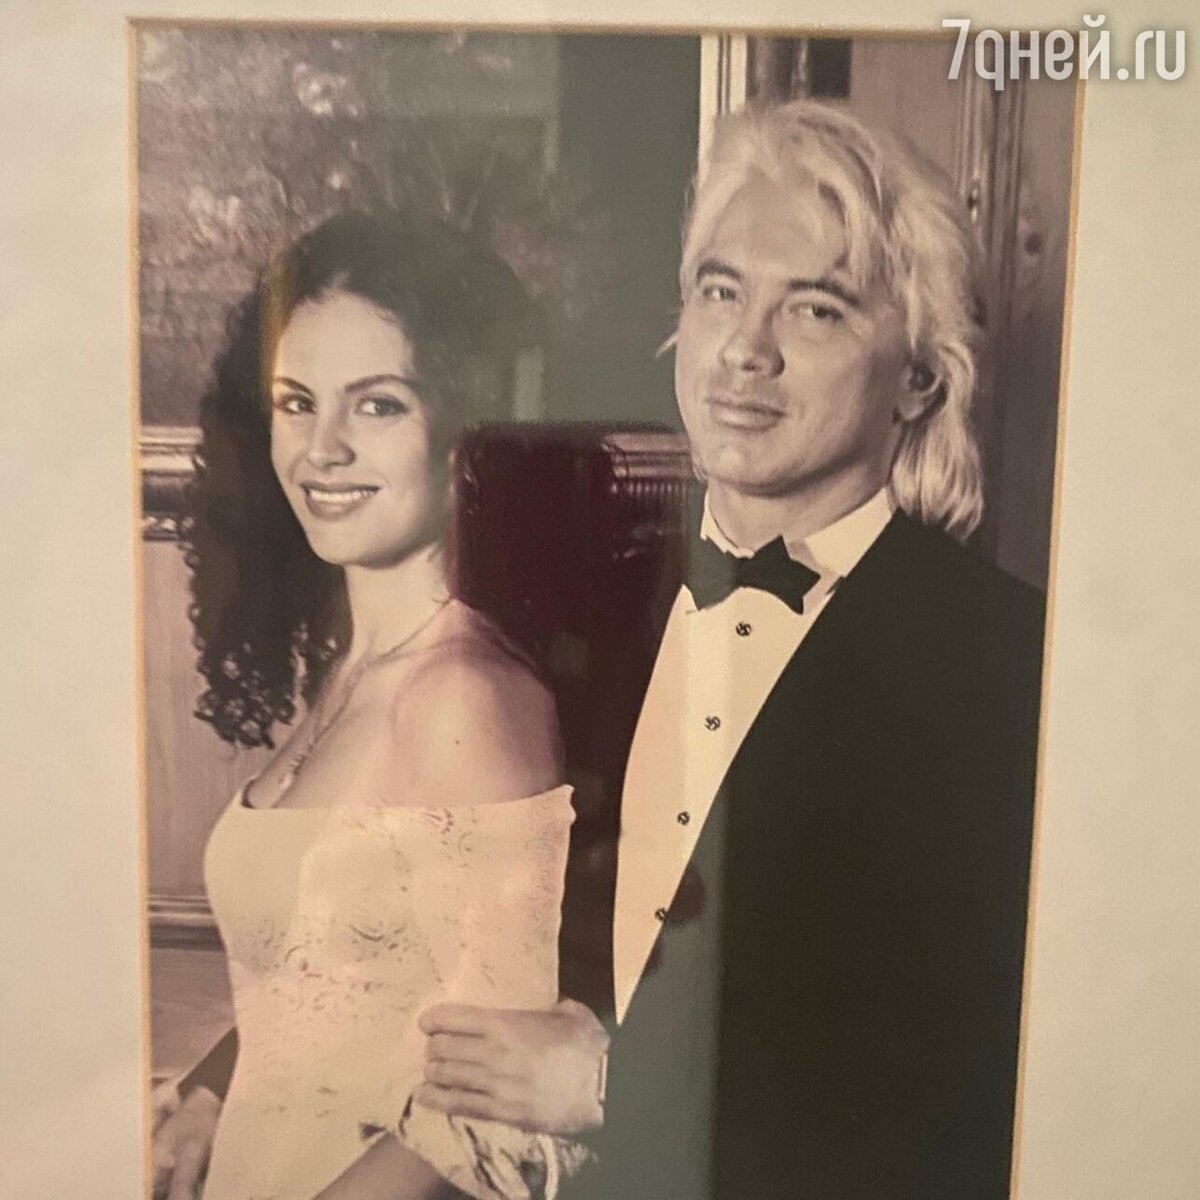 Как сложилась судьба первой жены Дмитрия Хворостовского – балерины Светланы Ивановой